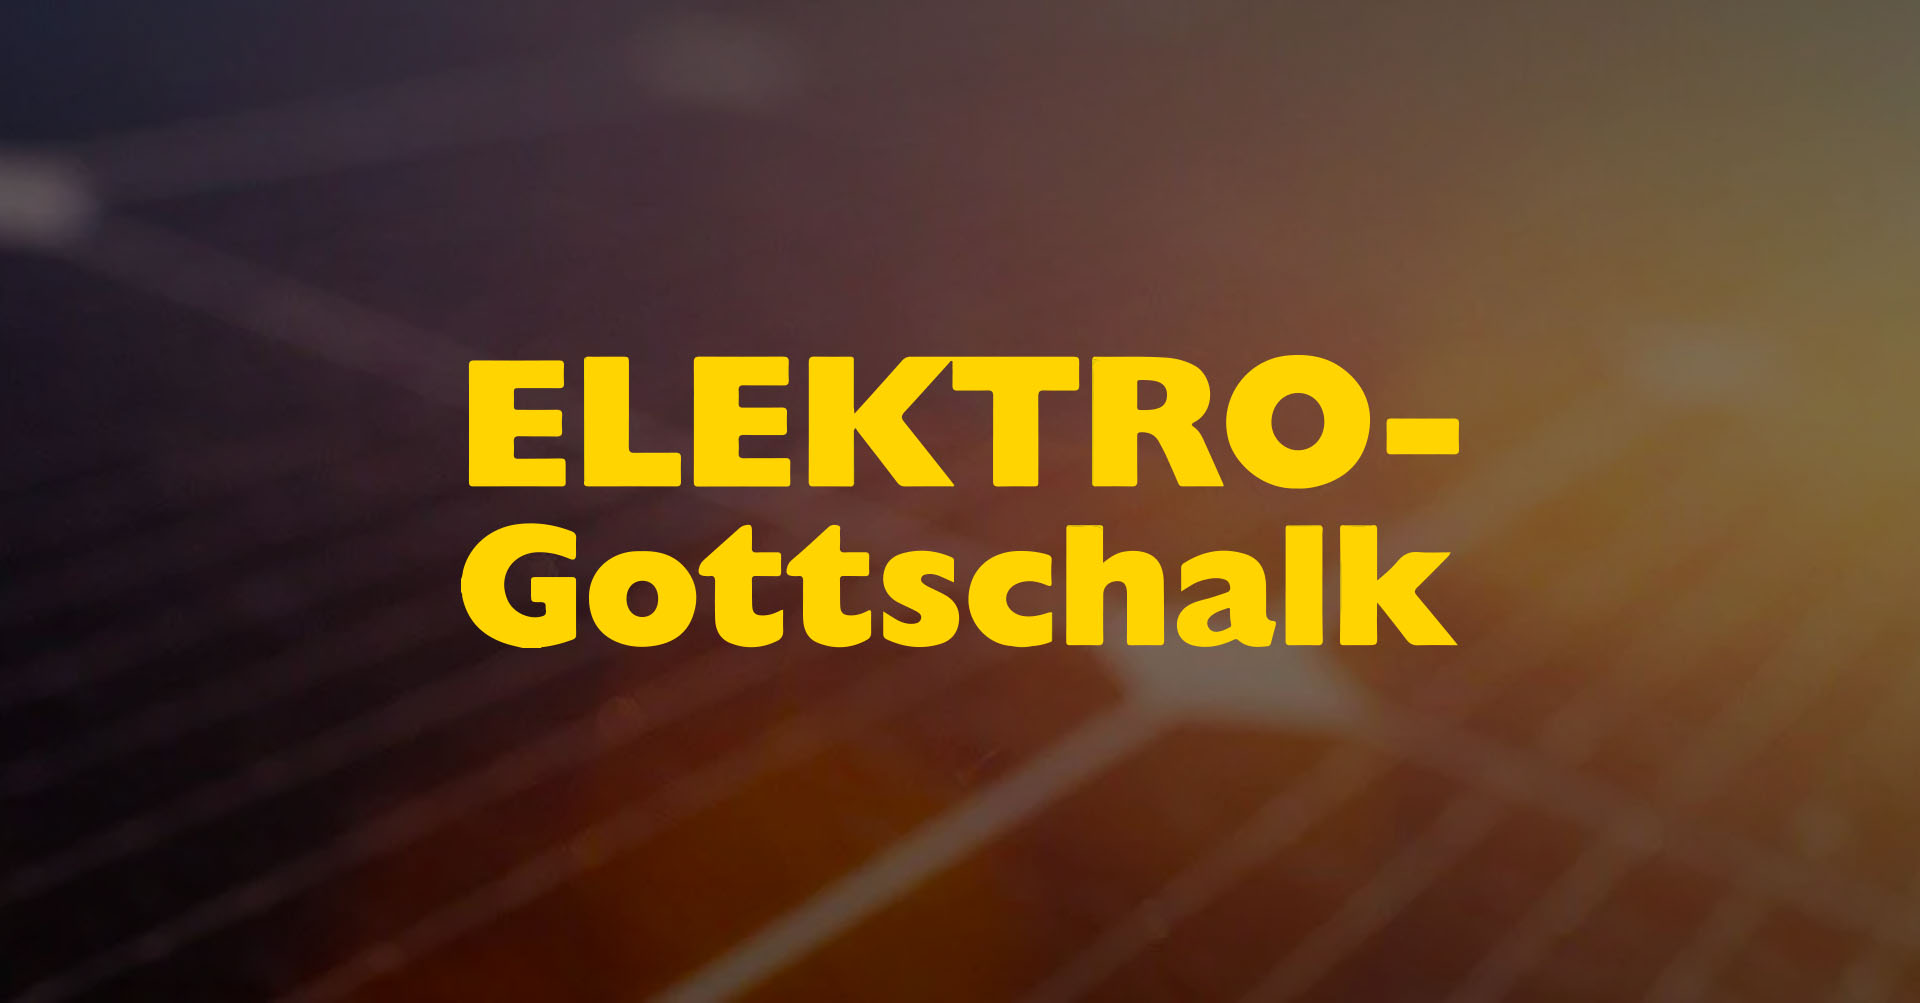 (c) Elektro-gottschalk.de